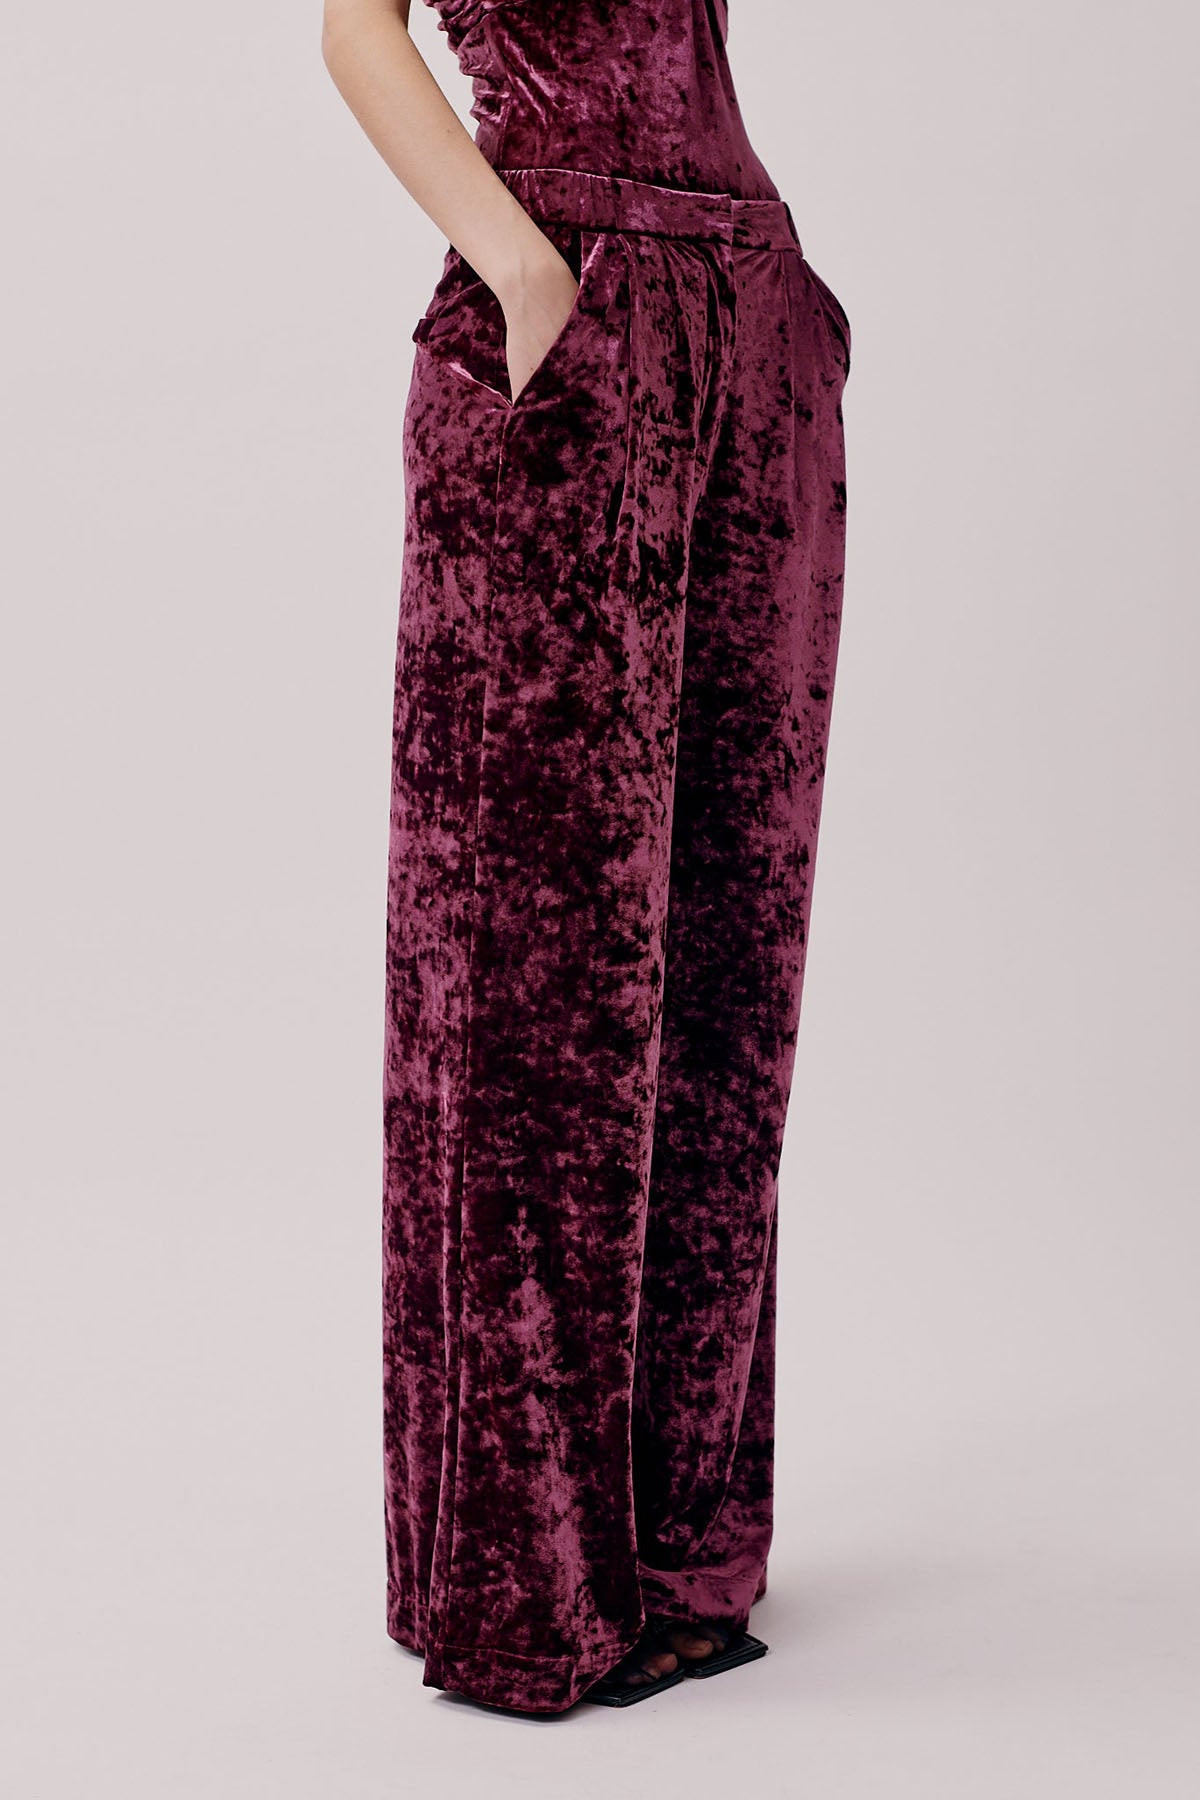 Rosalie Pants - Star Ruby Velvet by Hofmann Copenhagen